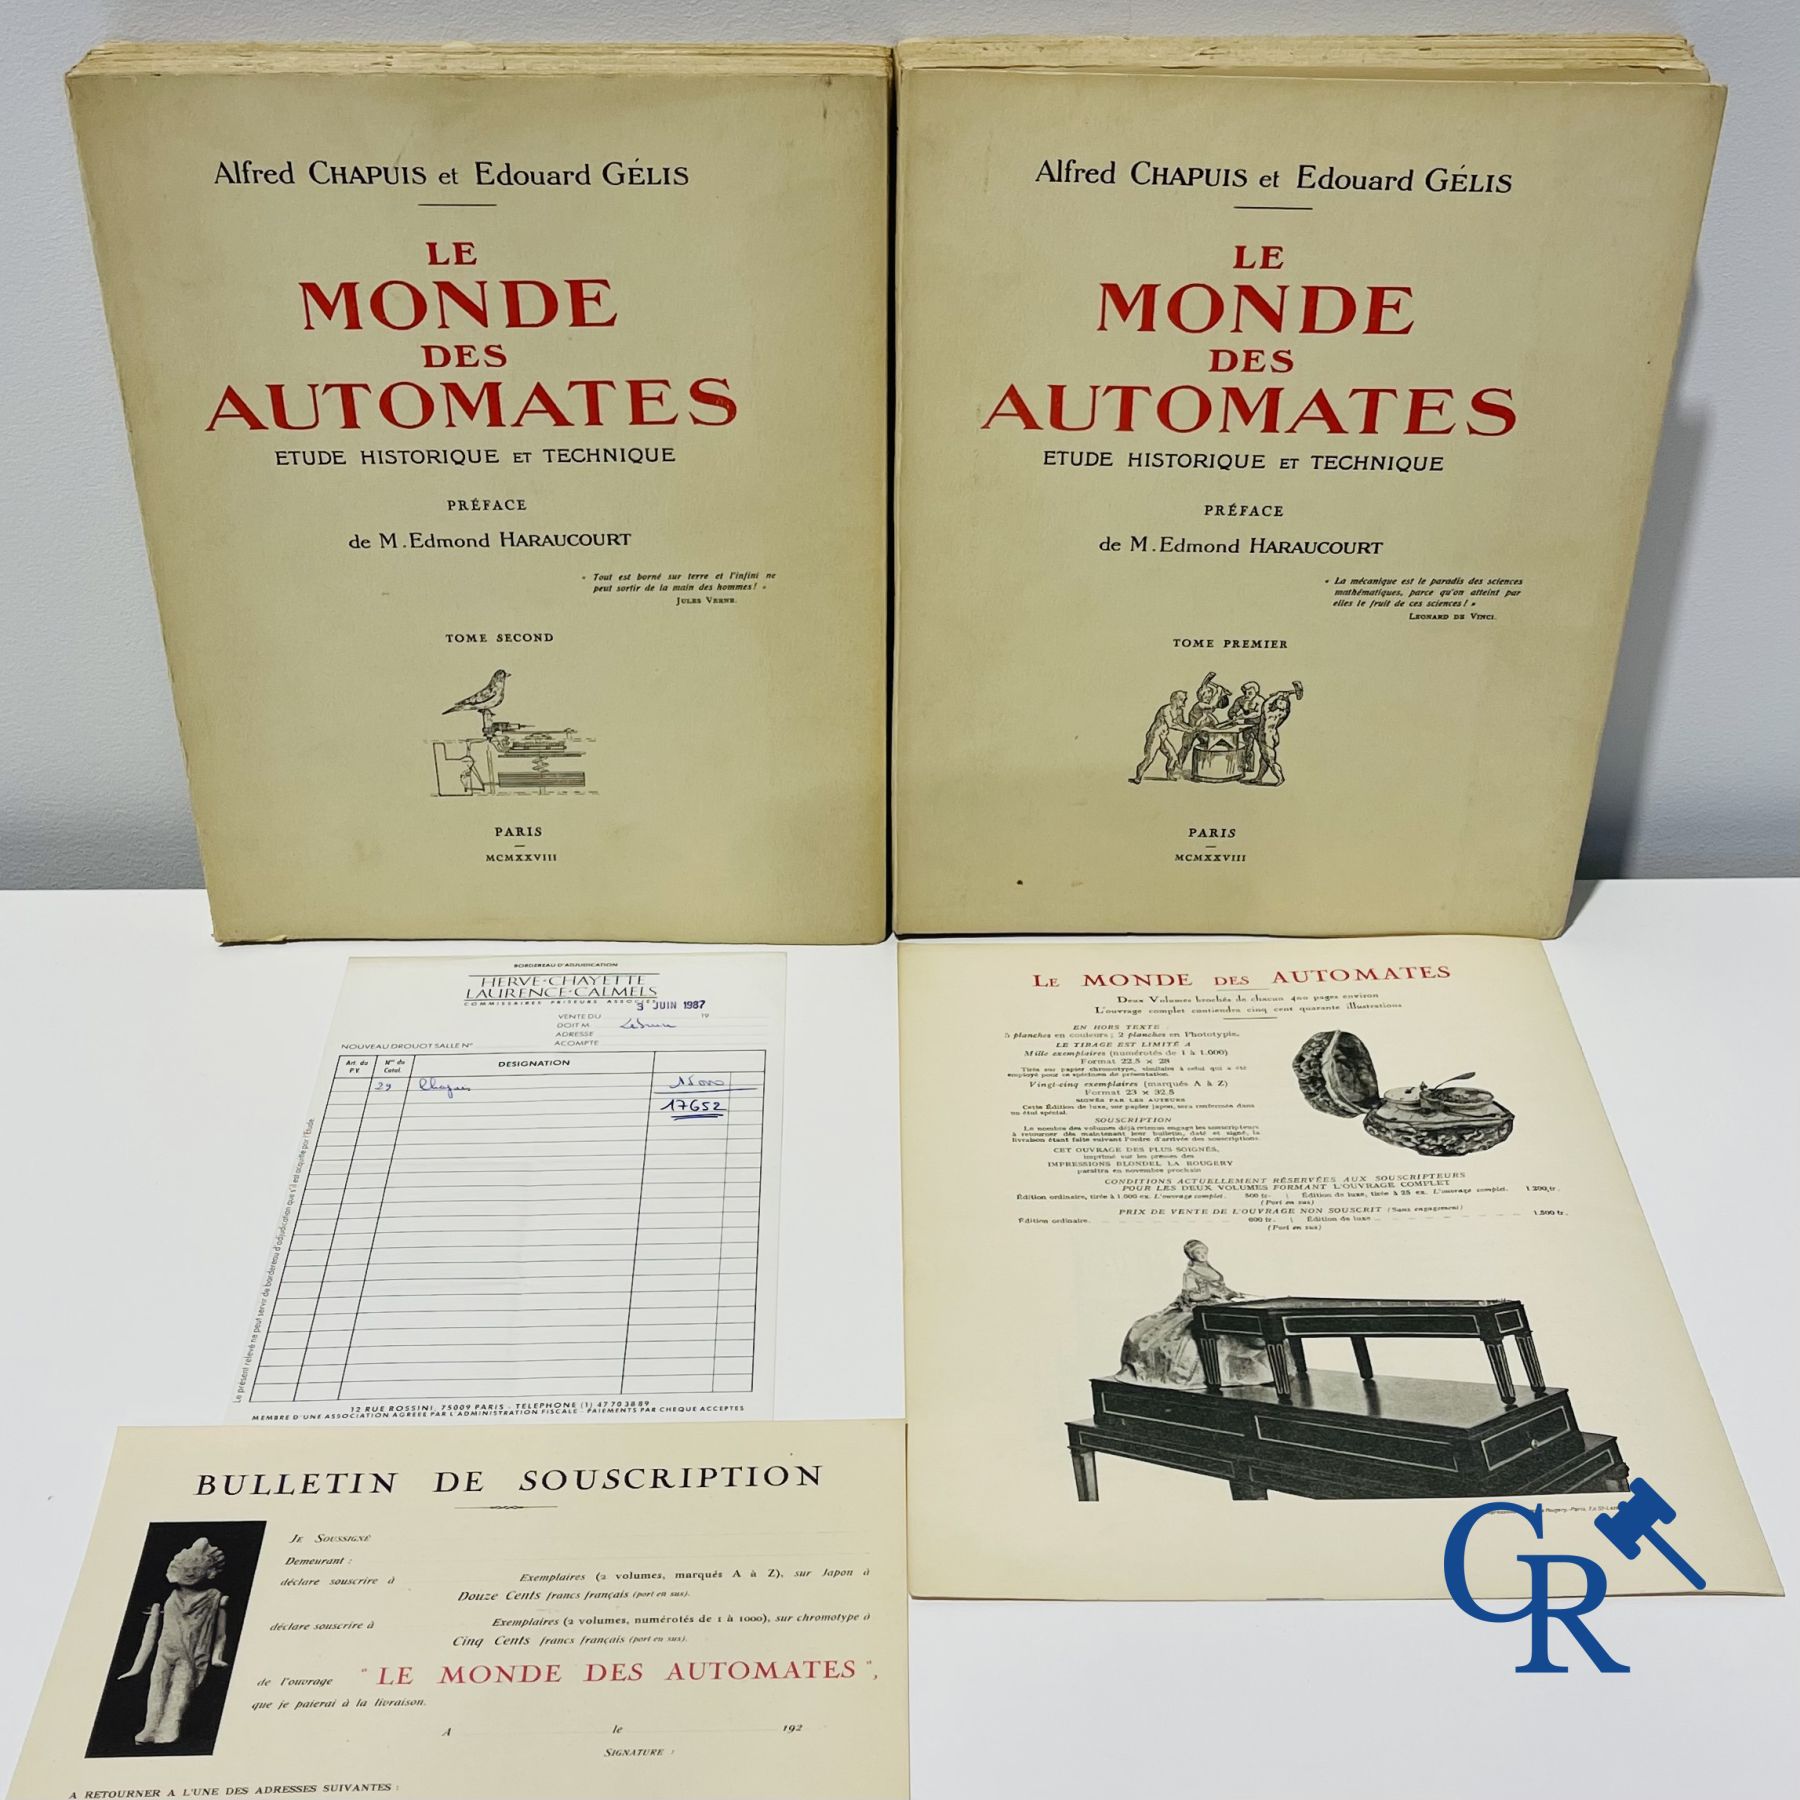 Automates. Rare edition of "Le monde des automates." Alfred Chapuis et Edouard Gélis. Paris 1928.